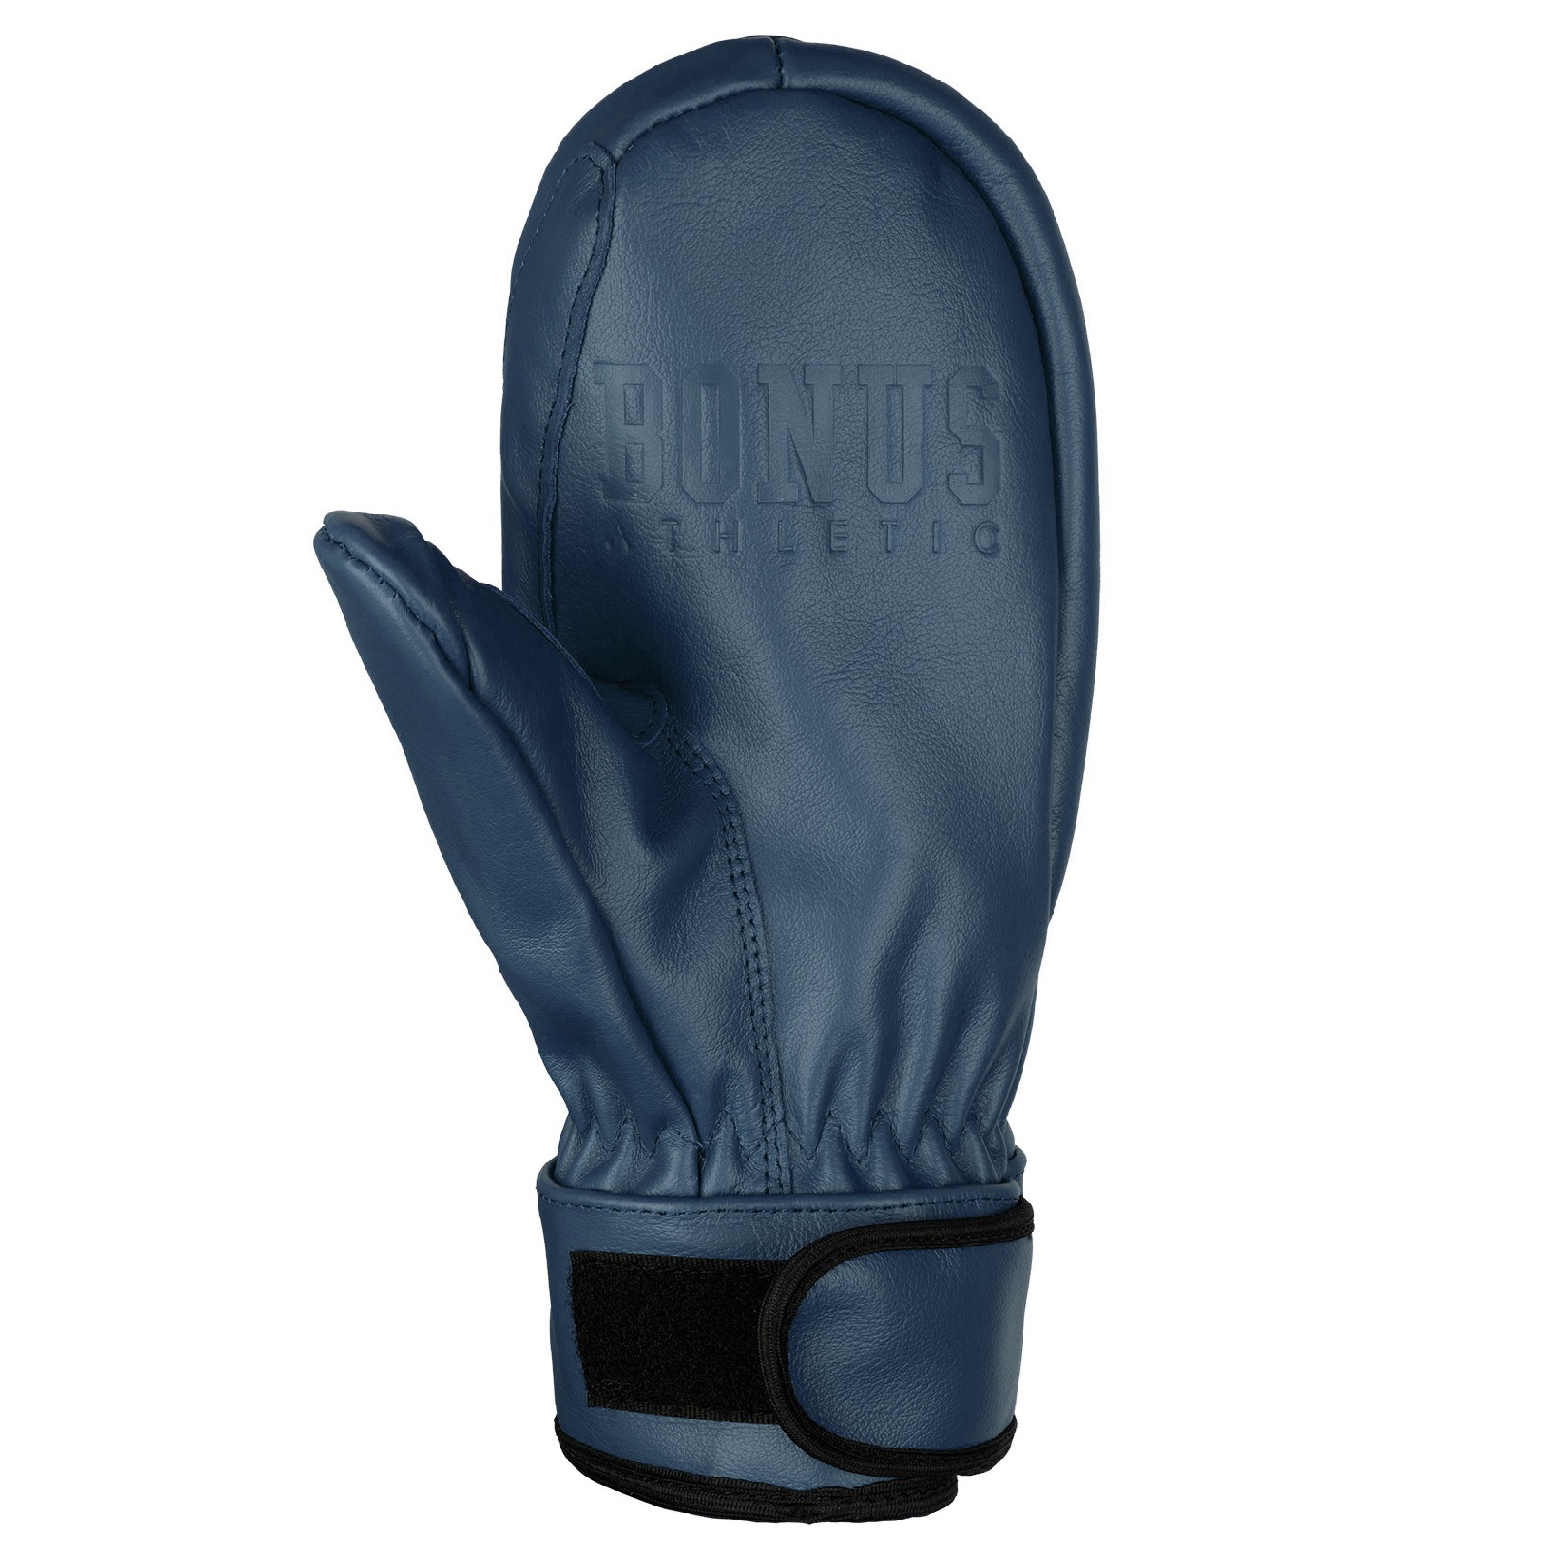 Варежки Bonus Gloves 20-21 Athletic Leather Navy, размер M - фото 2